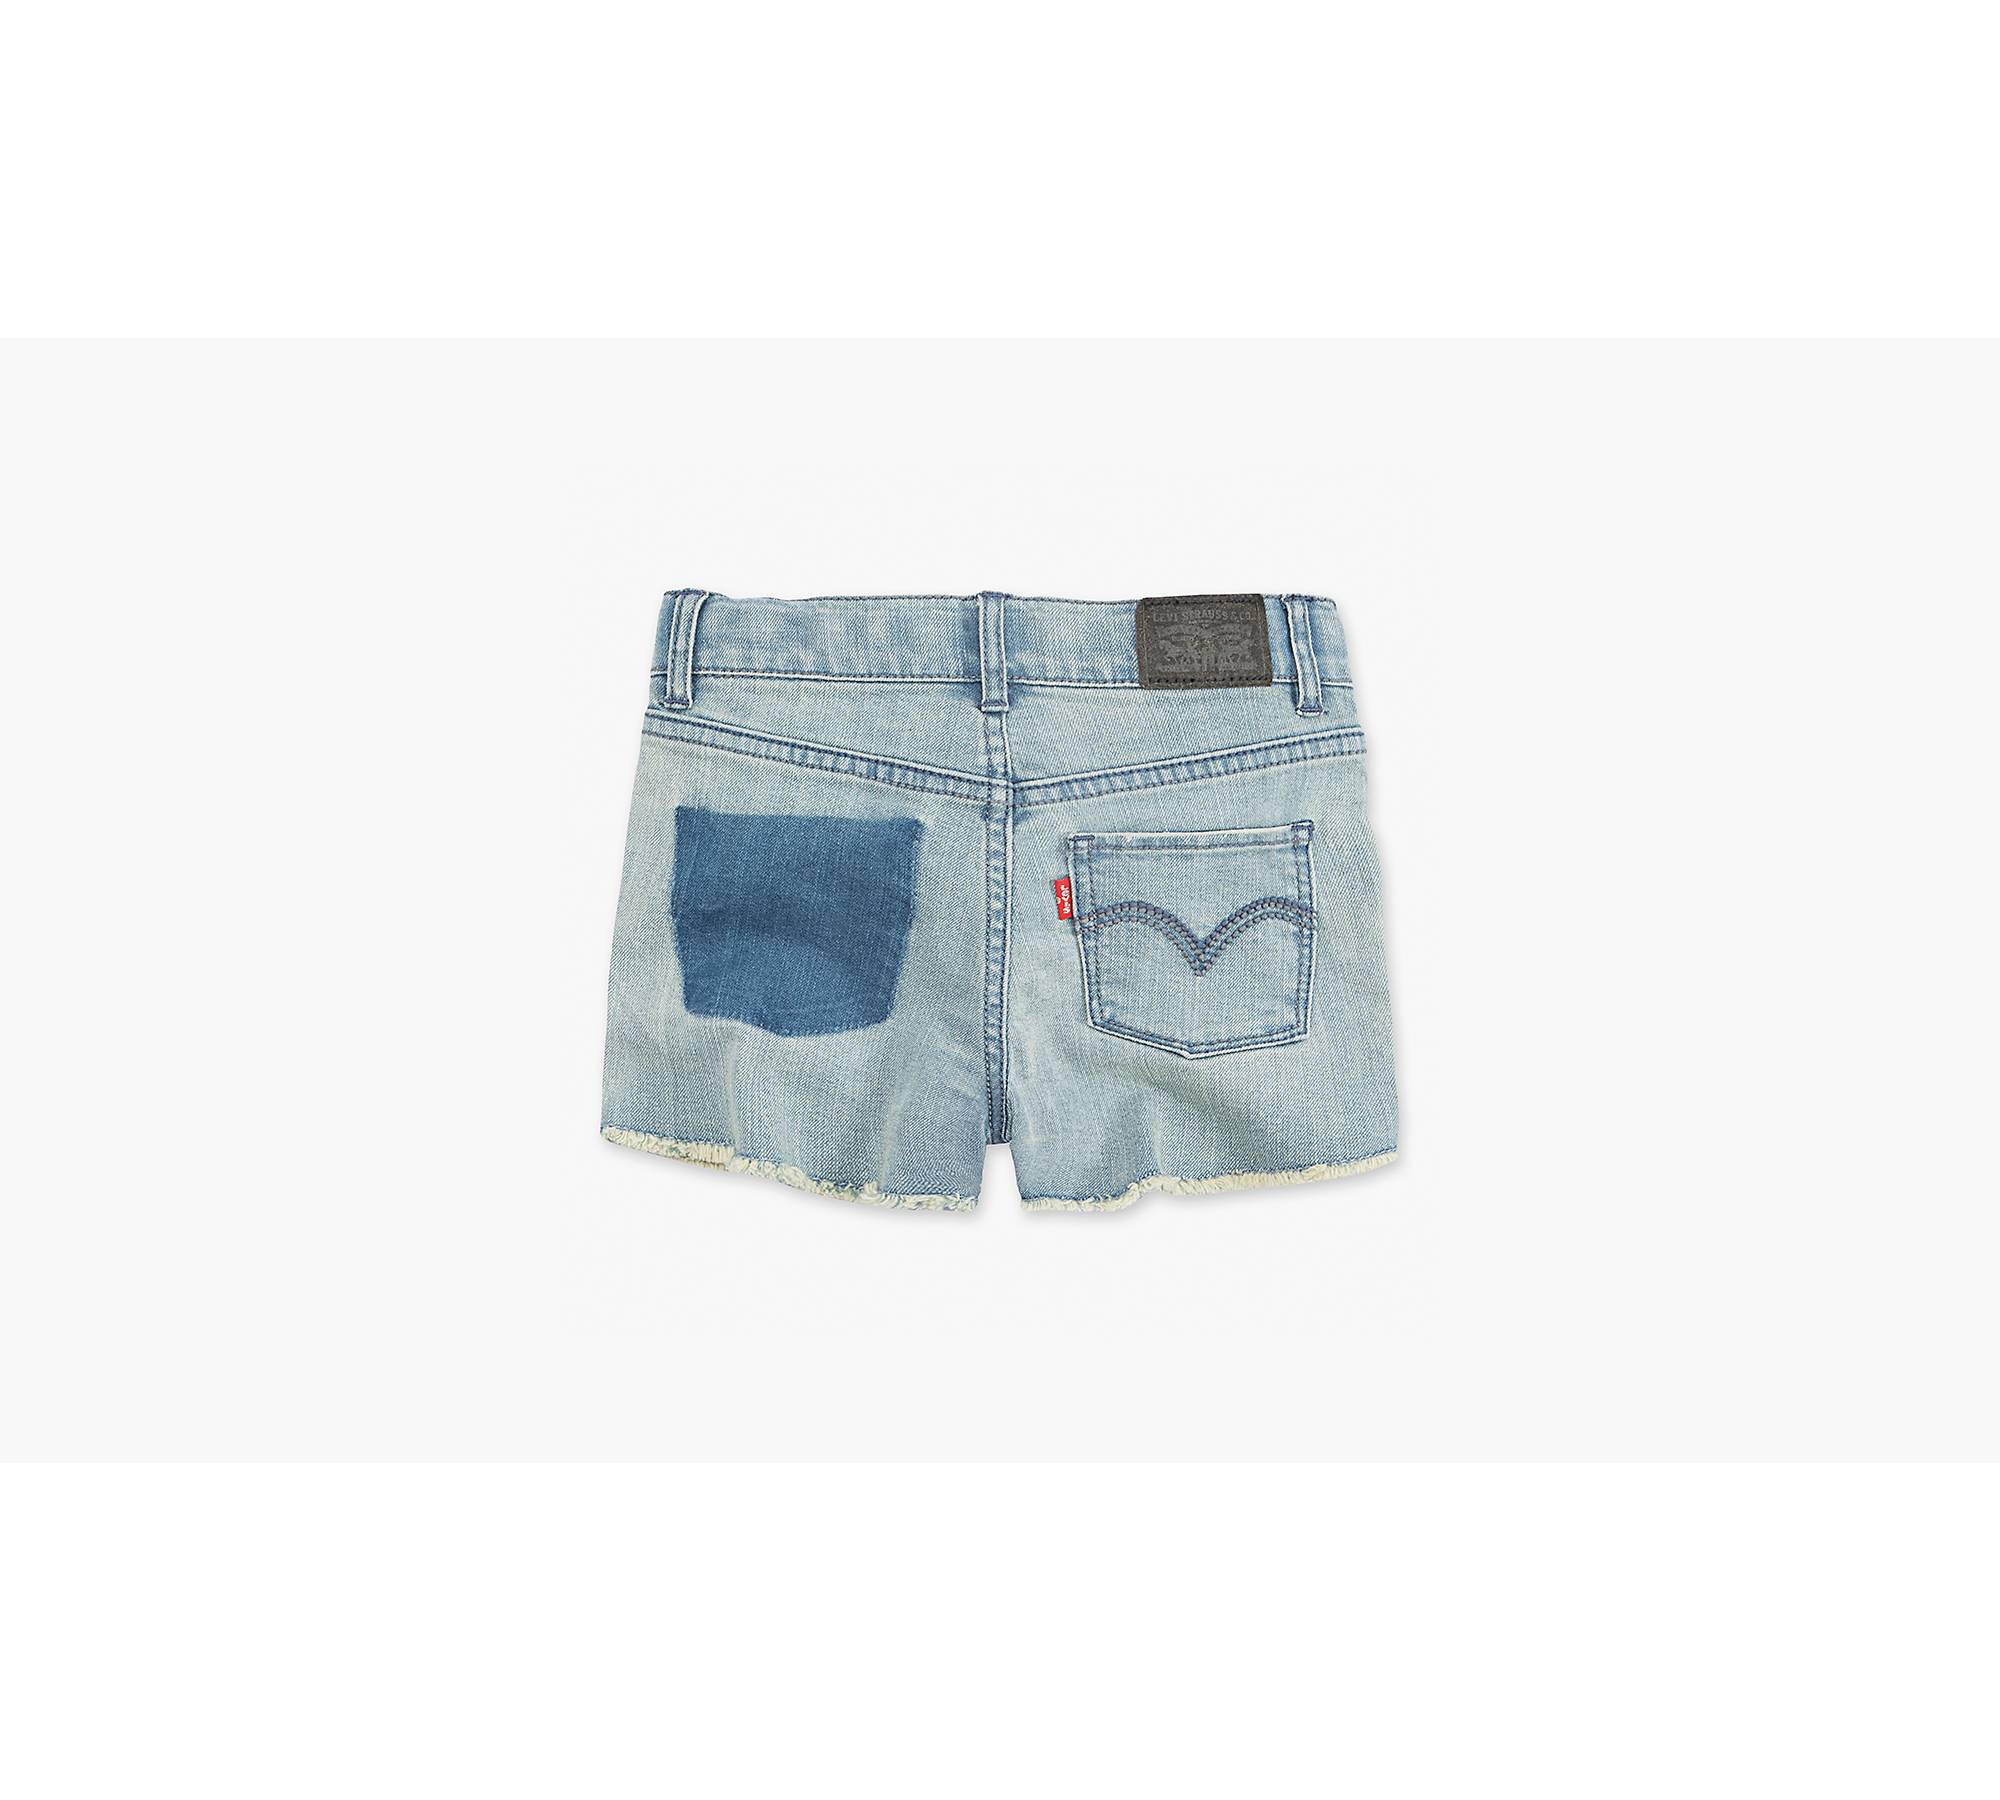 Girls 7-16 Altered Shorty Shorts - Light Wash | Levi's® US